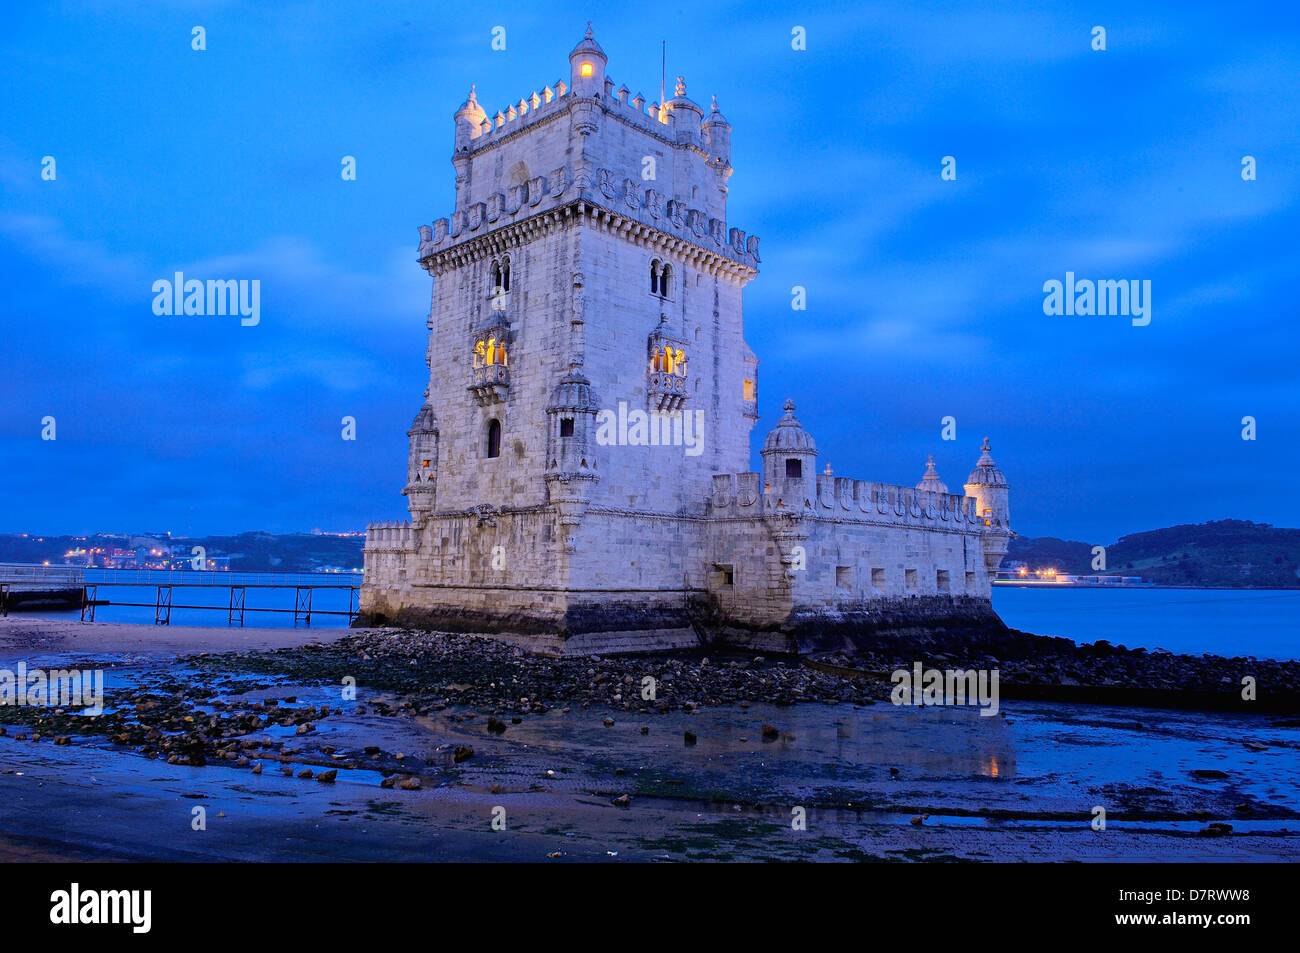 Belém Tower at Dusk. Torre de Belém built by Francisco de Arruda, Lisbon. Portugal Stock Photo